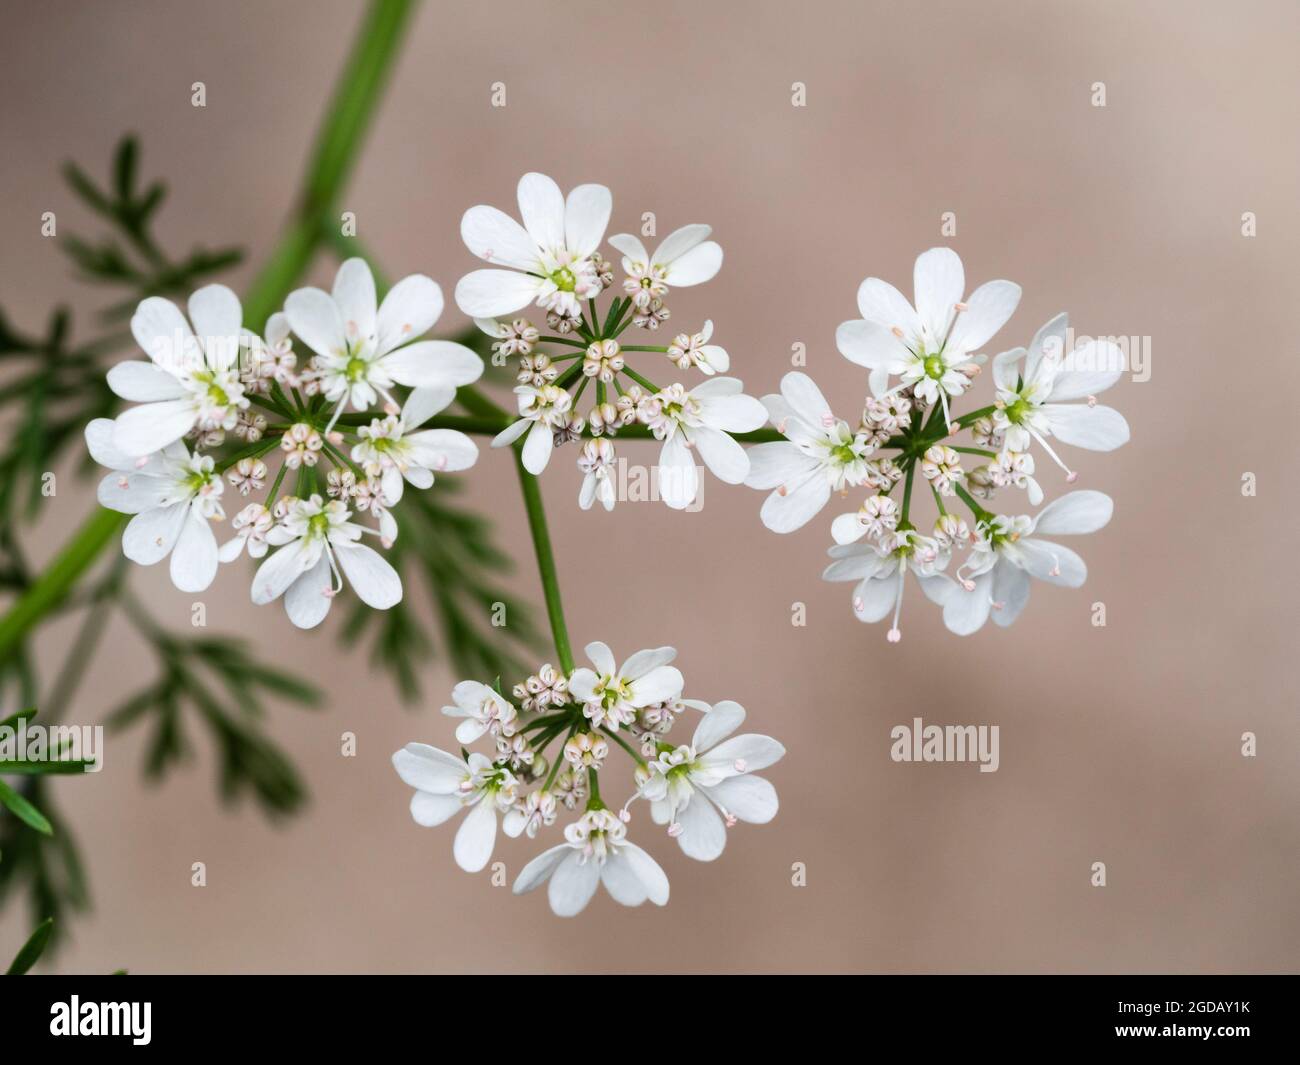 Fleurs d'ombellifères blanches de l'herbe culinaire annuelle cilantro ou coriandre, Coriandrum sativum Banque D'Images